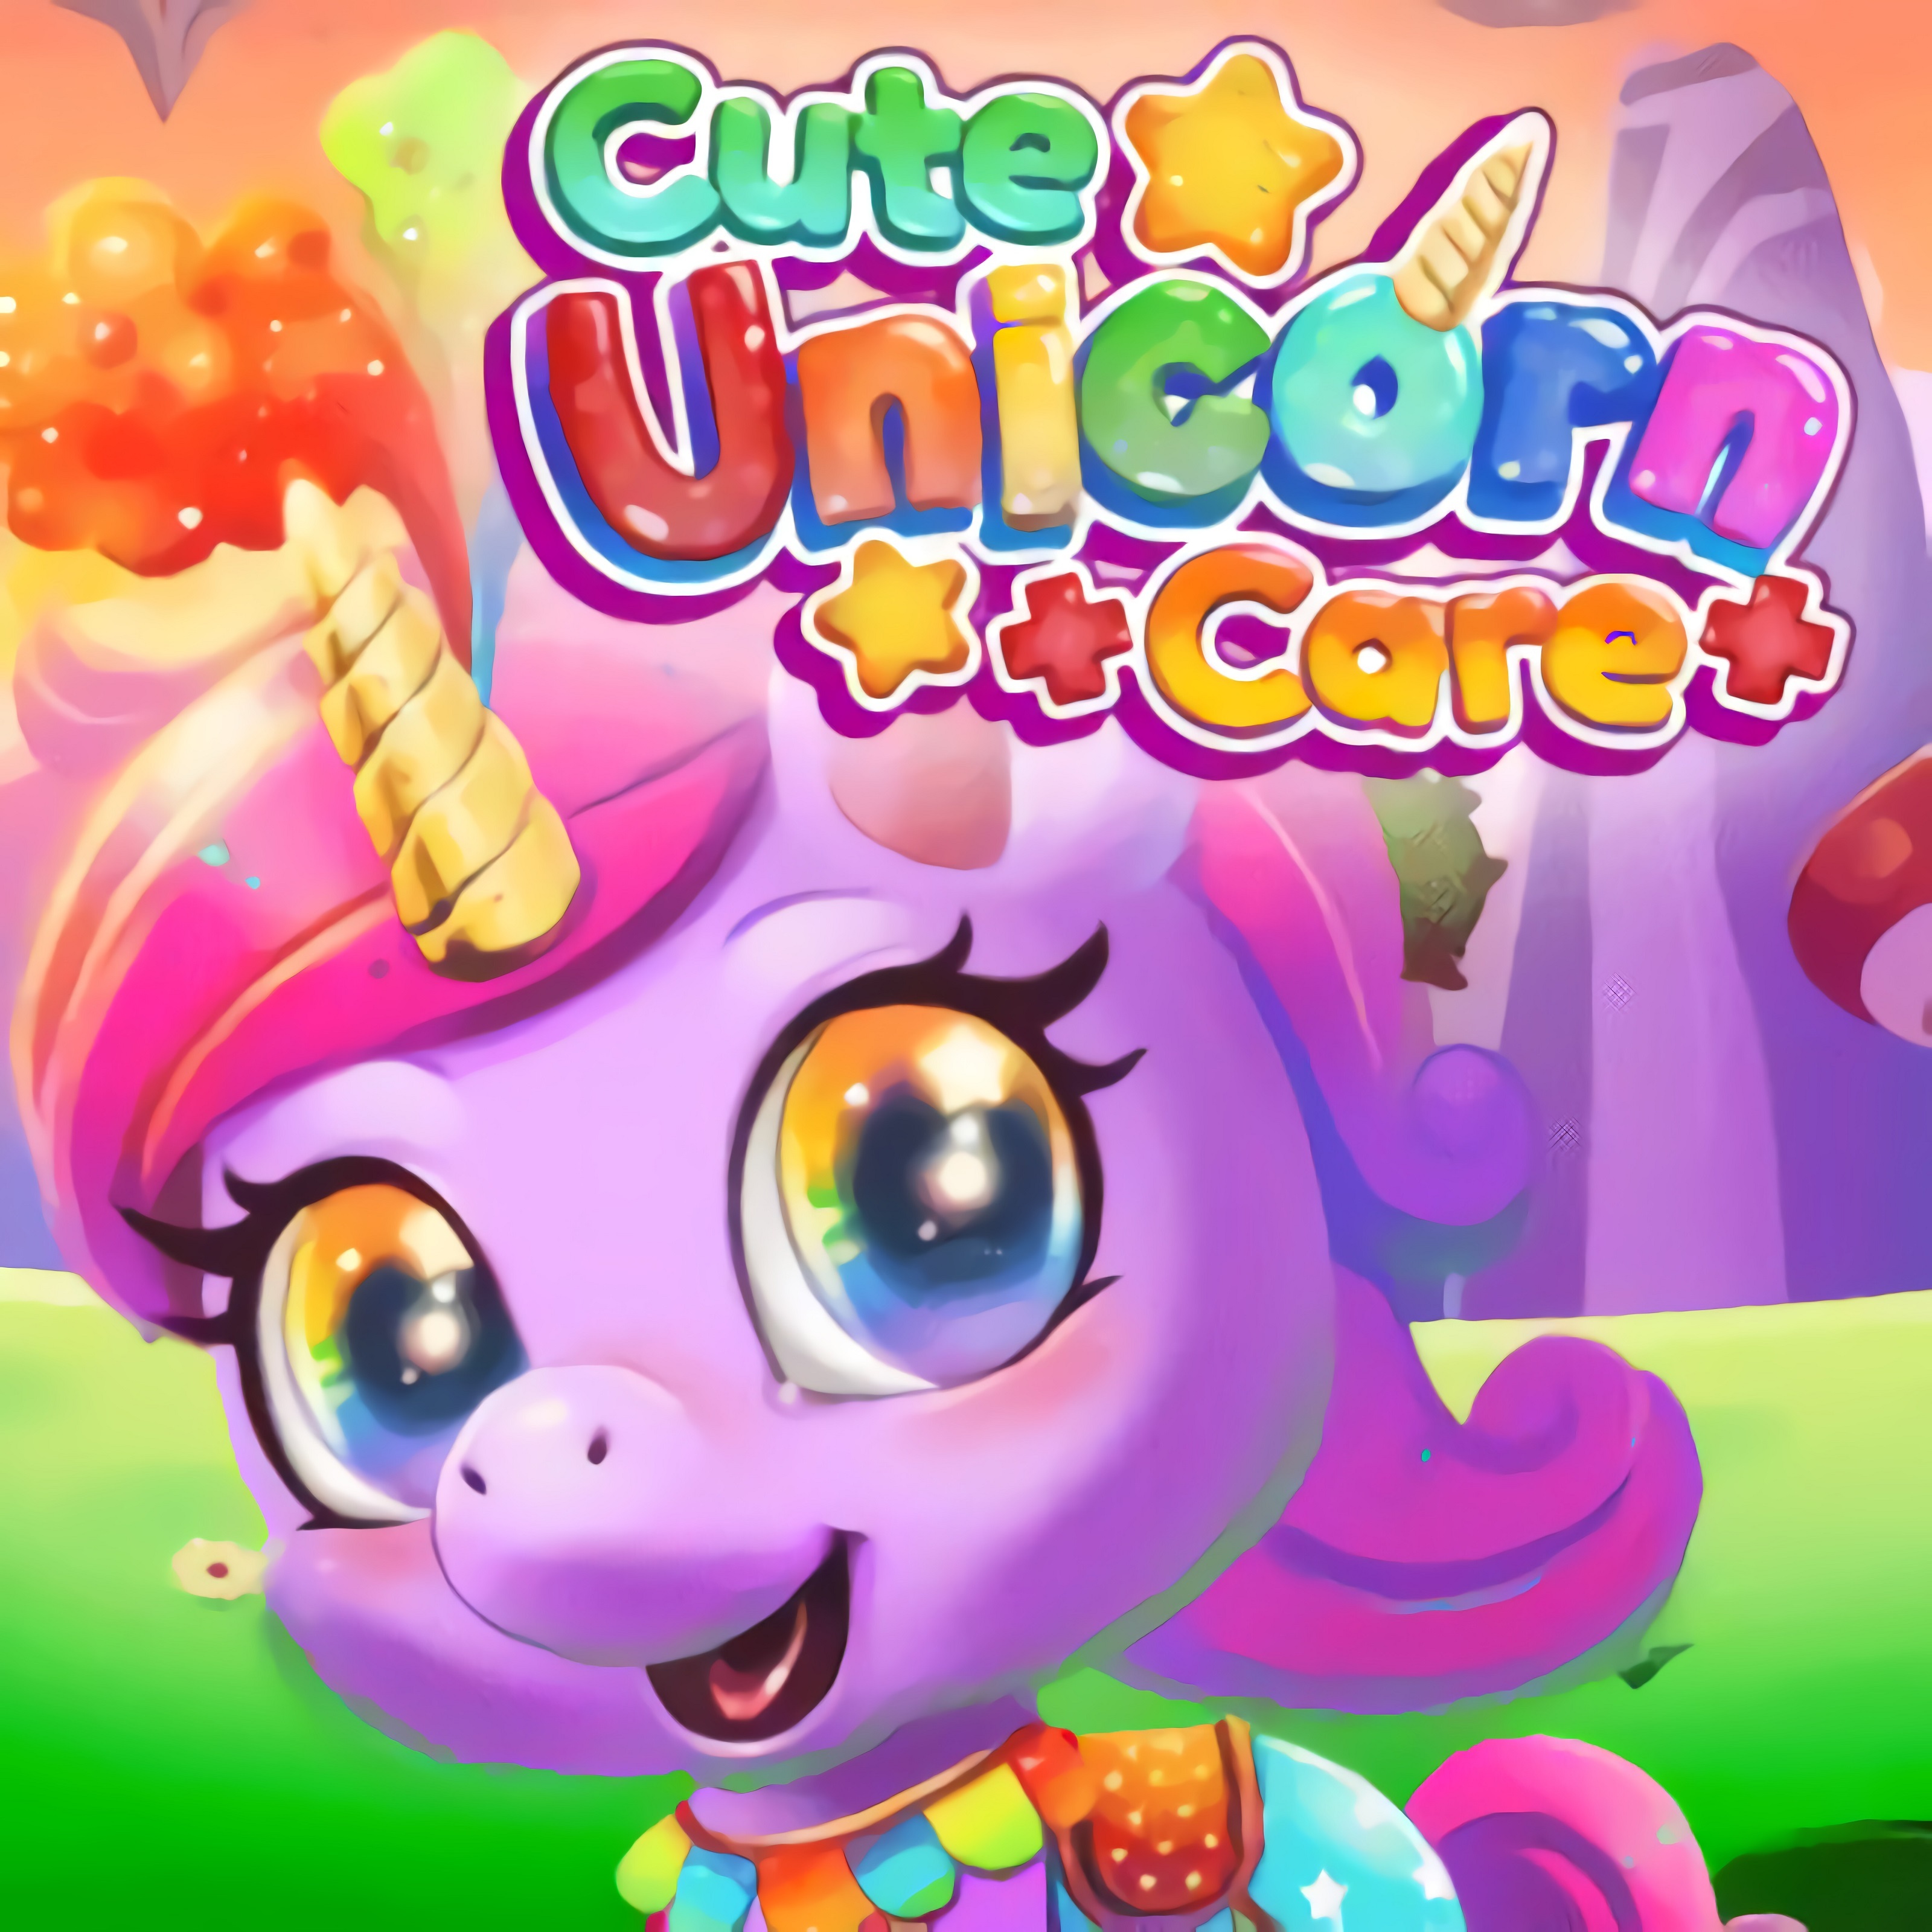 Cutie Unicorn Care